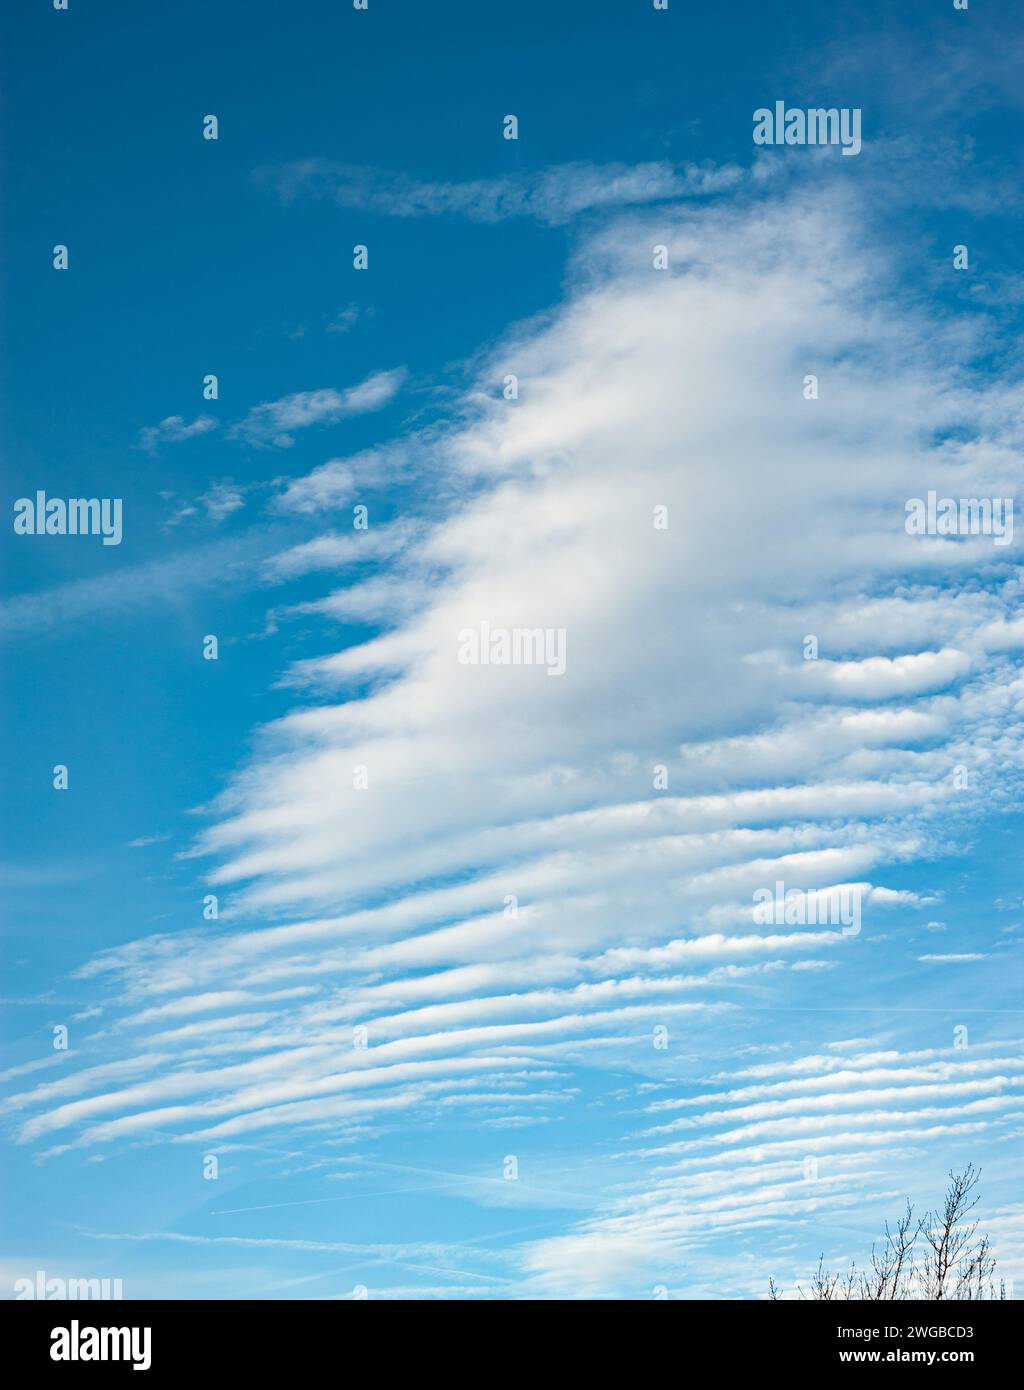 Wunderschöne Wellenwolken, bekannt als Altocumulus undulatus vor einem stahlblauen Himmel. Stockfoto